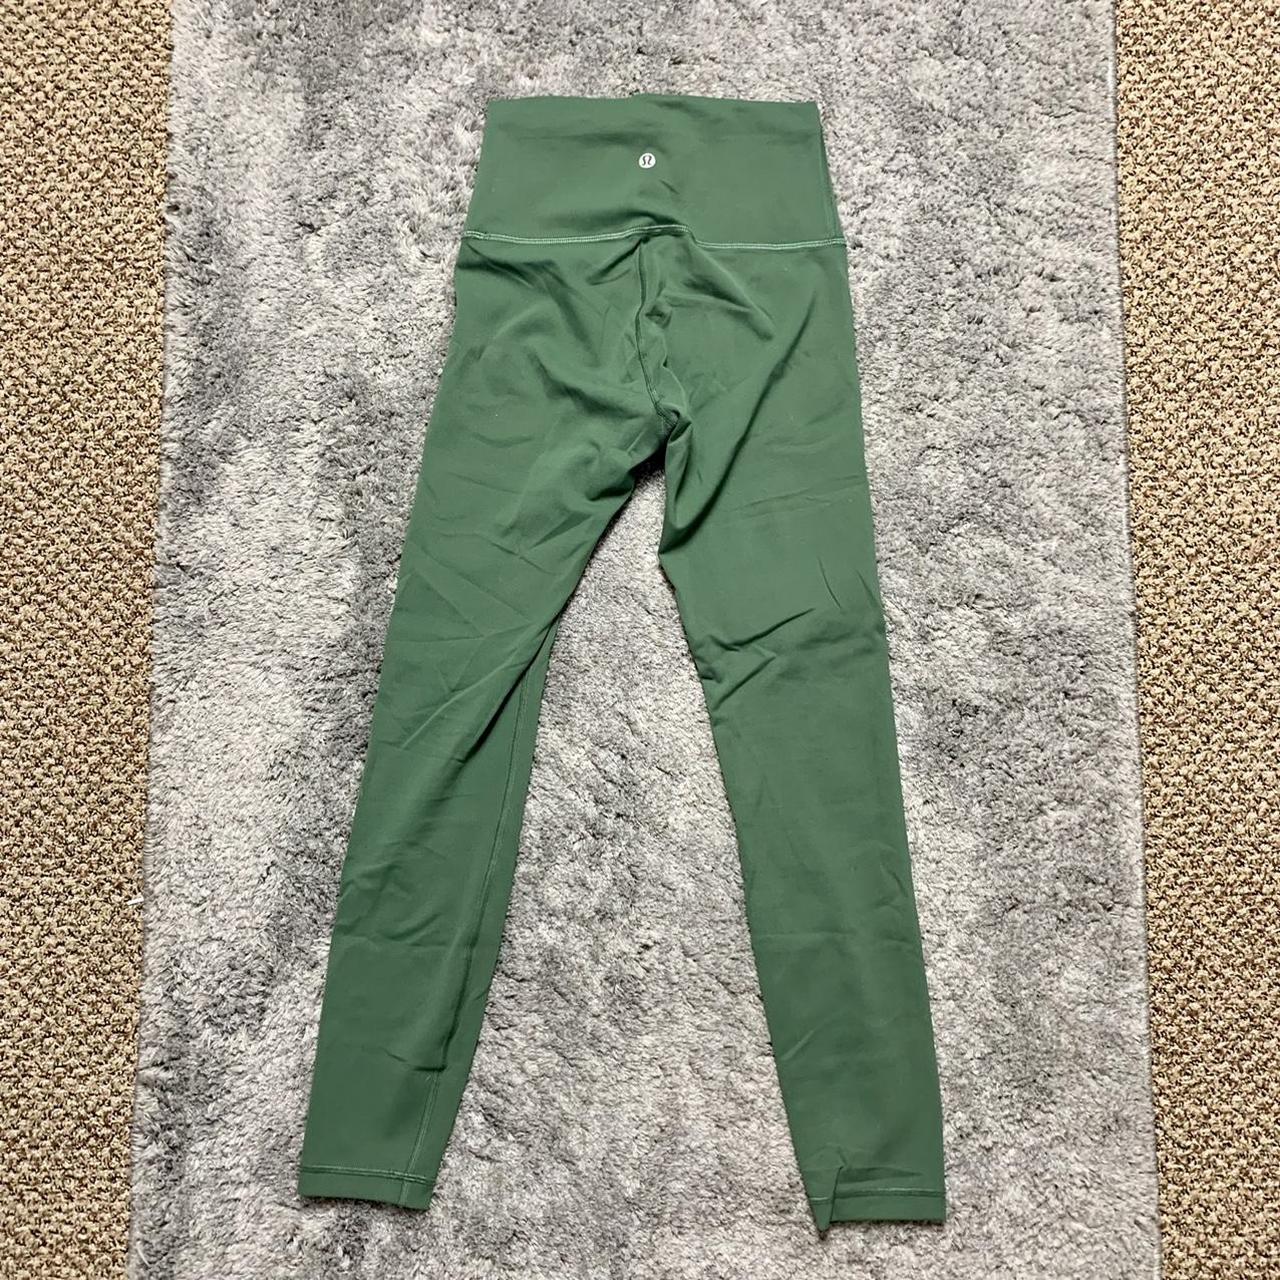 Lululemon dark green leggings #lululemon #leggings - Depop